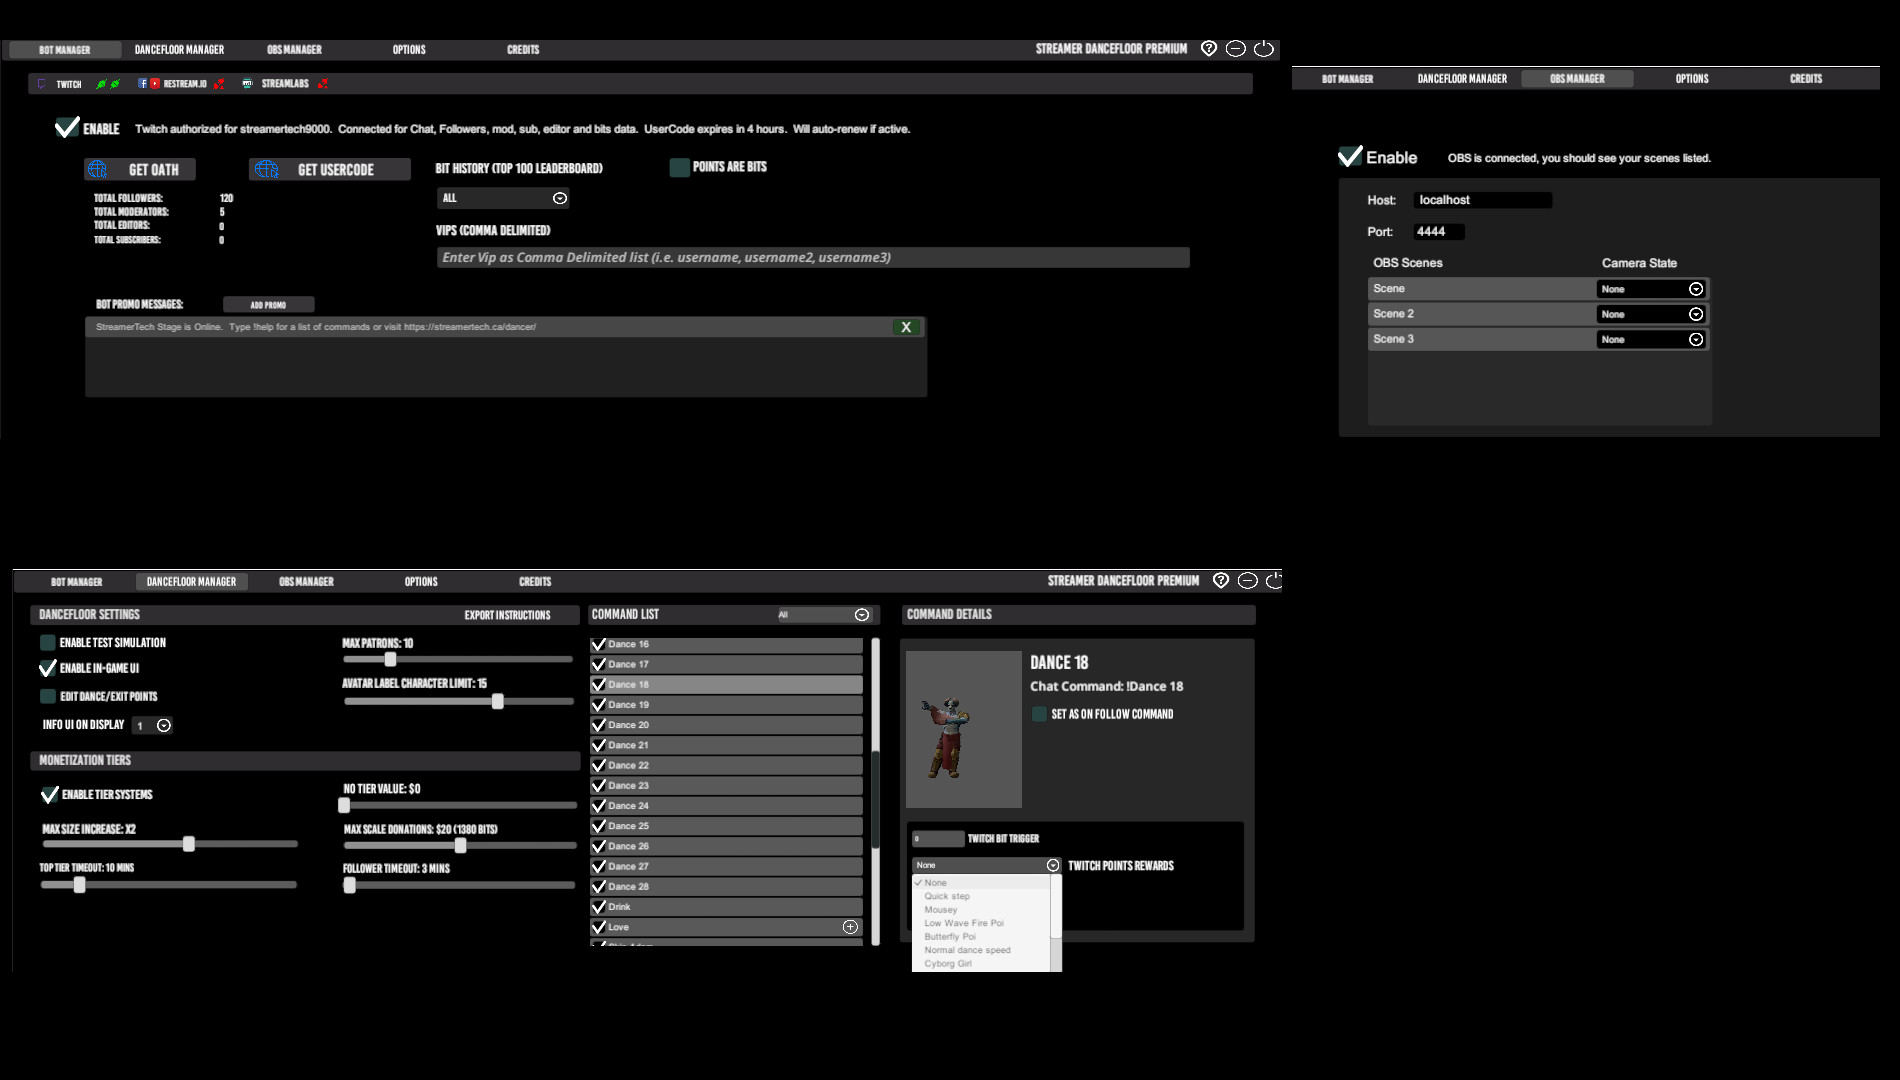 Streamer Dancefloor screenshot